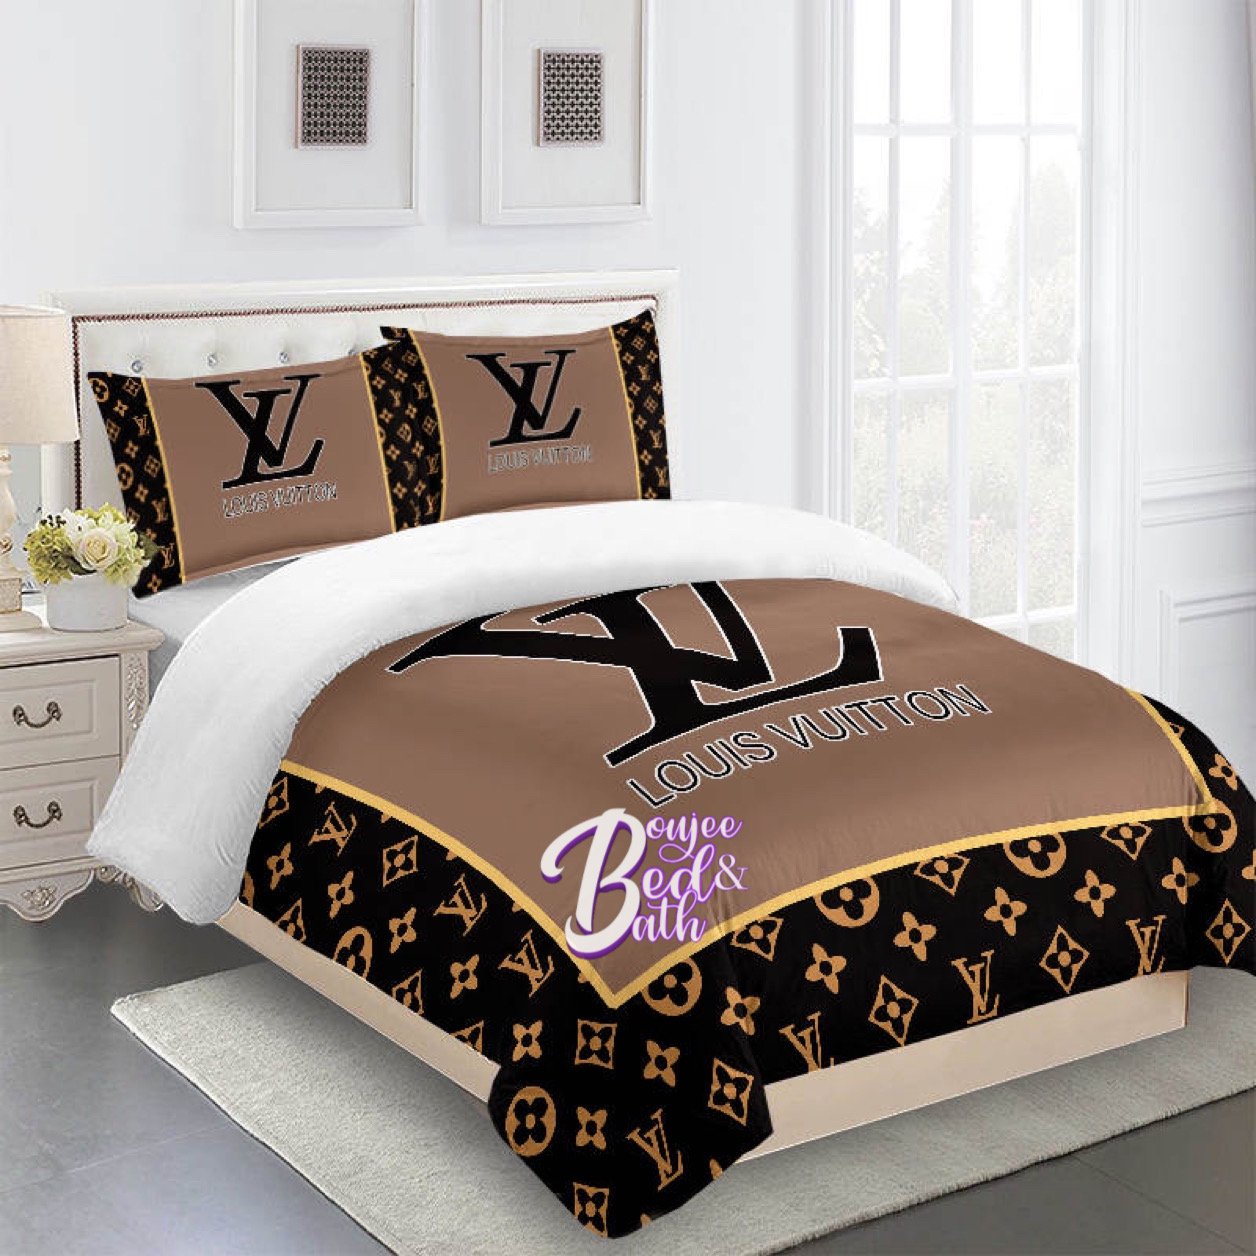 Louis Vuitton Bedding Set  REVER LAVIE